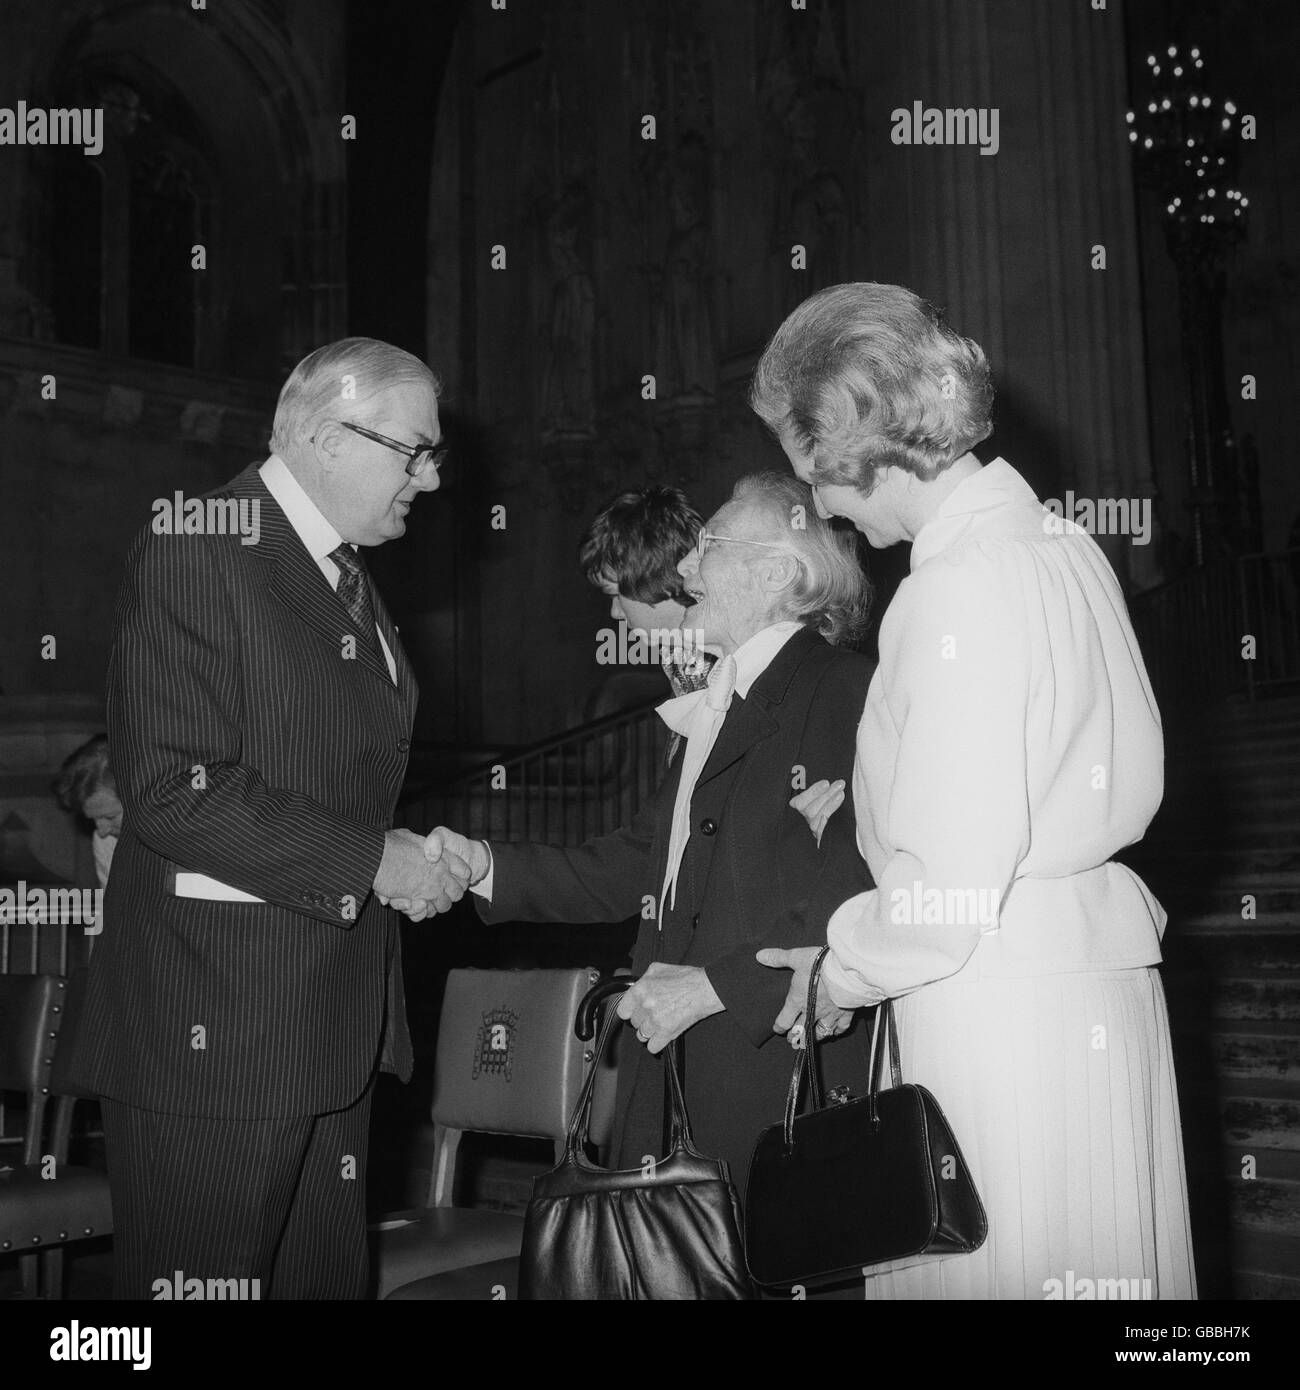 Le Premier ministre James Callaghan, en compagnie de la chef de l'opposition Margaret Thatcher, à Westminster Hall, lorsqu'ils ont rencontré la suffragette Dame Margery Corbett Ashby, âgée de 96 ans, lors de l'inauguration officielle de l'exposition « Un droit de vote », qui marque le 50e anniversaire de l'égalité des droits de vote. Banque D'Images